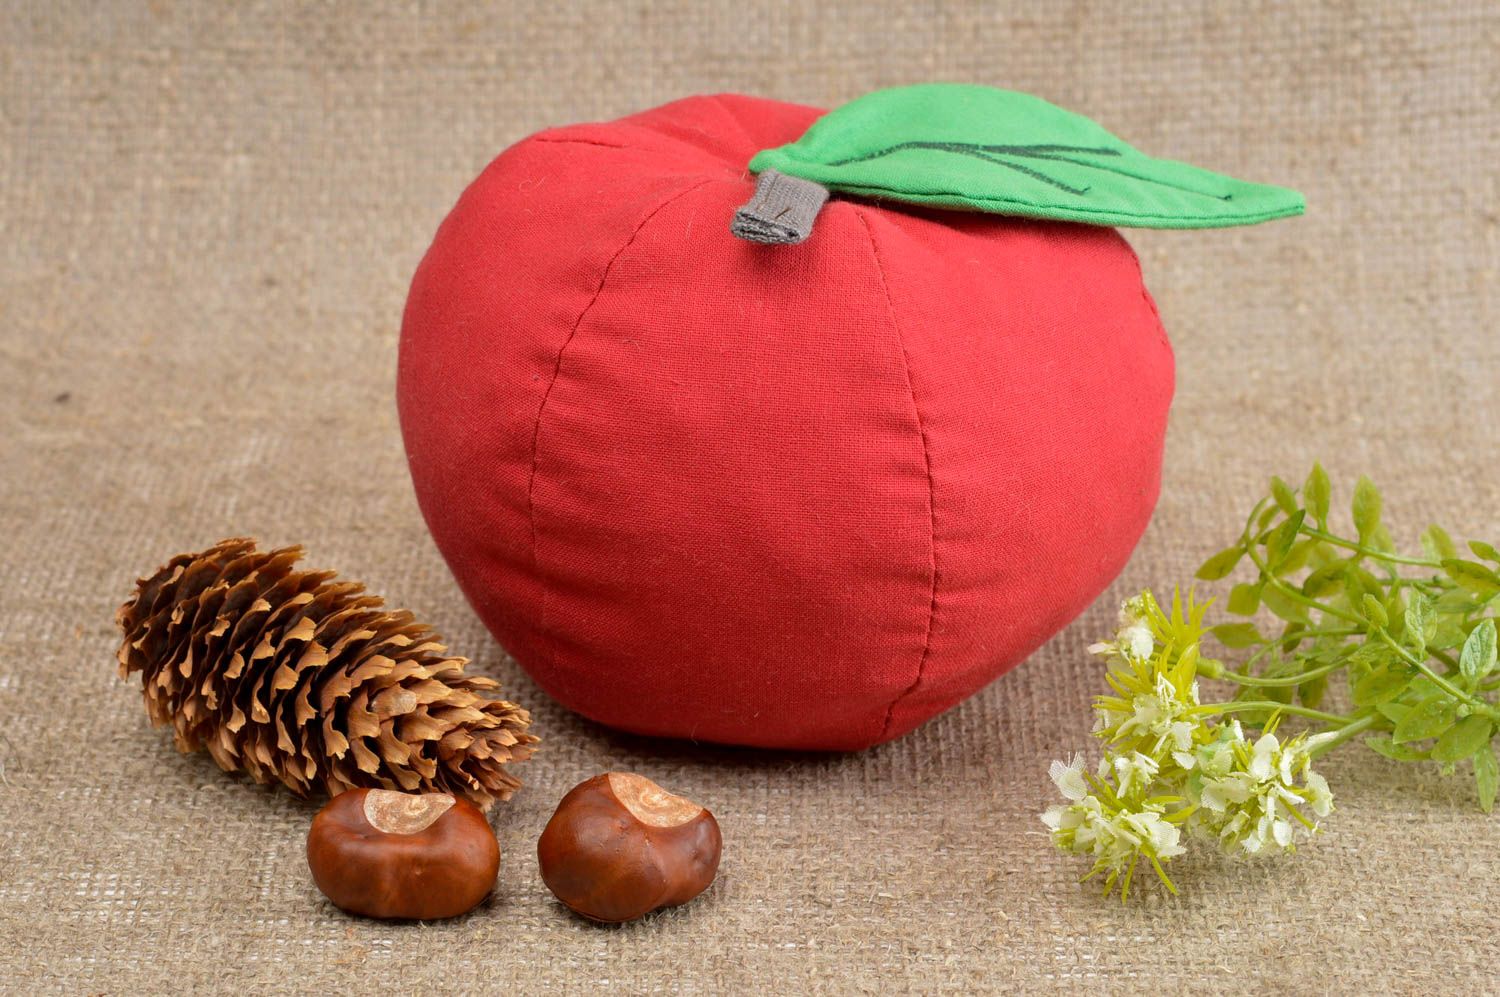 Игрушка яблоко ручной работы детская игрушка из ткани мягкая игрушка красная фото 1